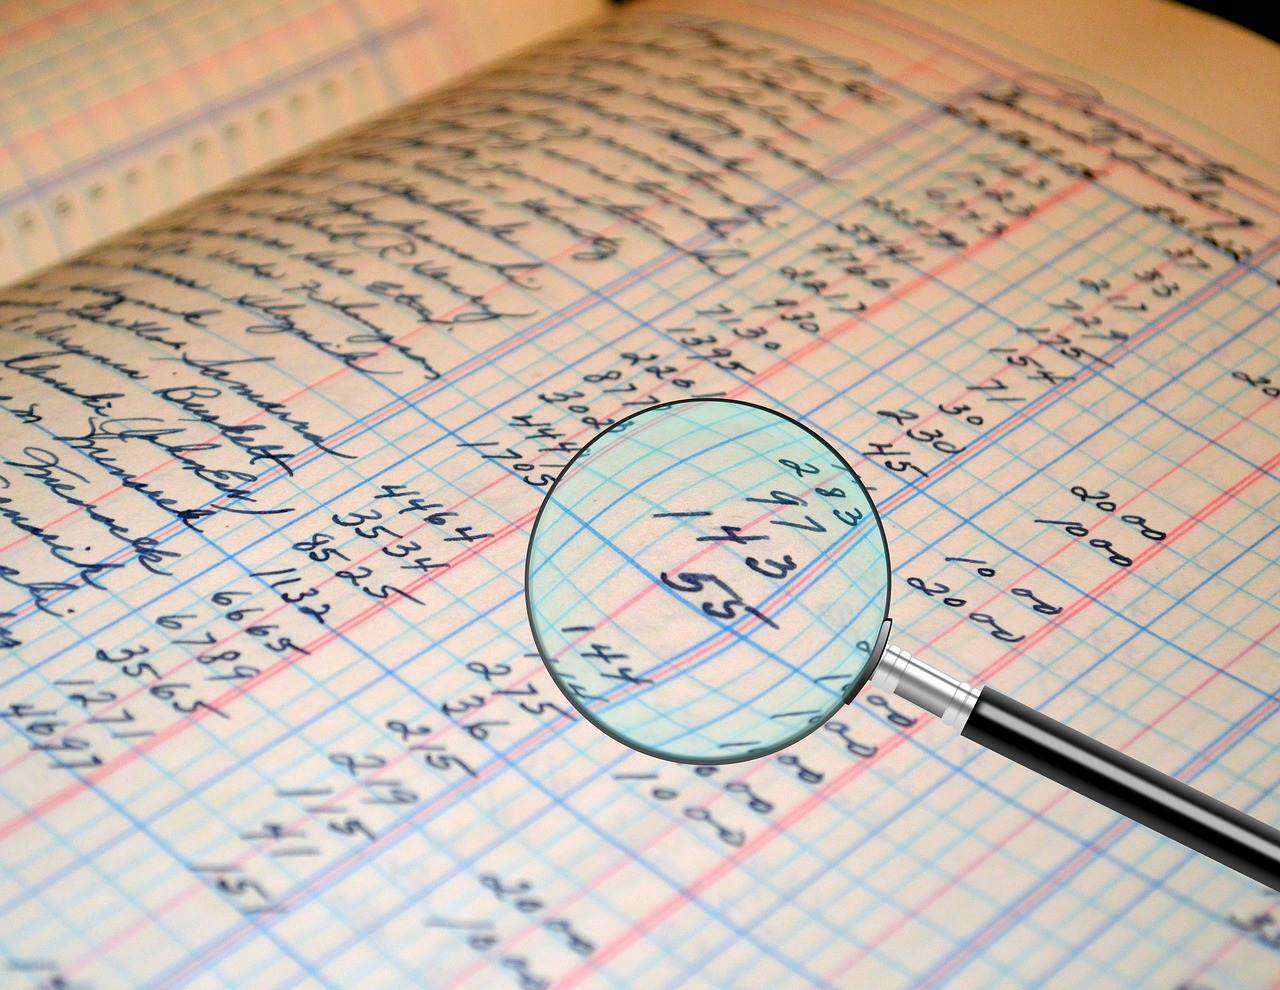 Audit Accounting Ledger Figures  - Tumisu / Pixabay